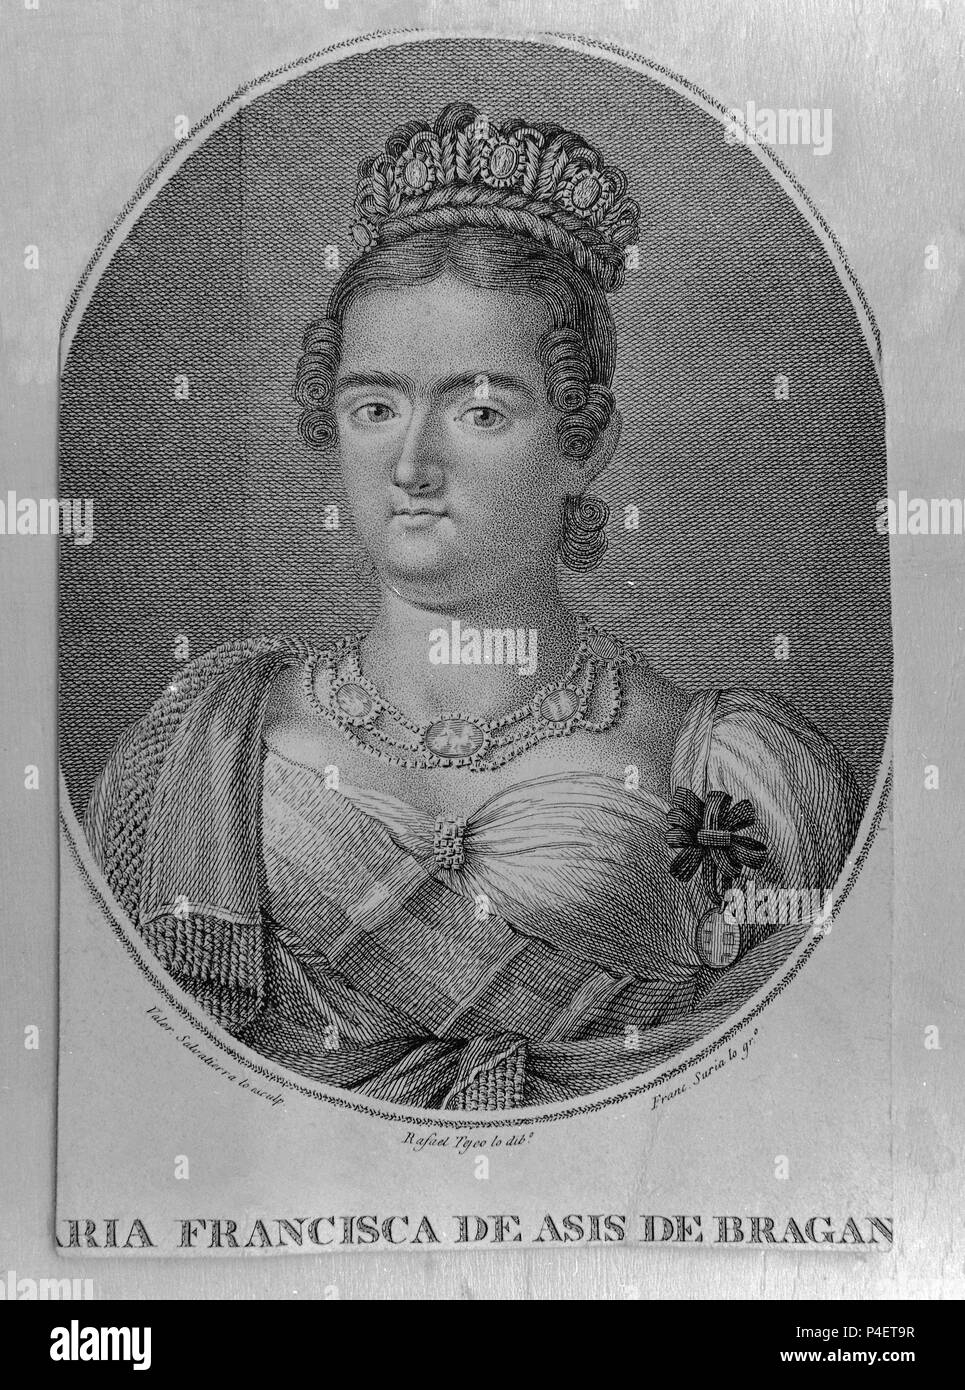 MARIA FRANCISCA DE BRAGANZA - INFANTA DE ESPAÑA - 1814/1848 - GRABADO S XIX. Author: F. Suria (19th cent.). Location: MUSEO ROMANTICO-GRABADO, MADRID, SPAIN. Stock Photo